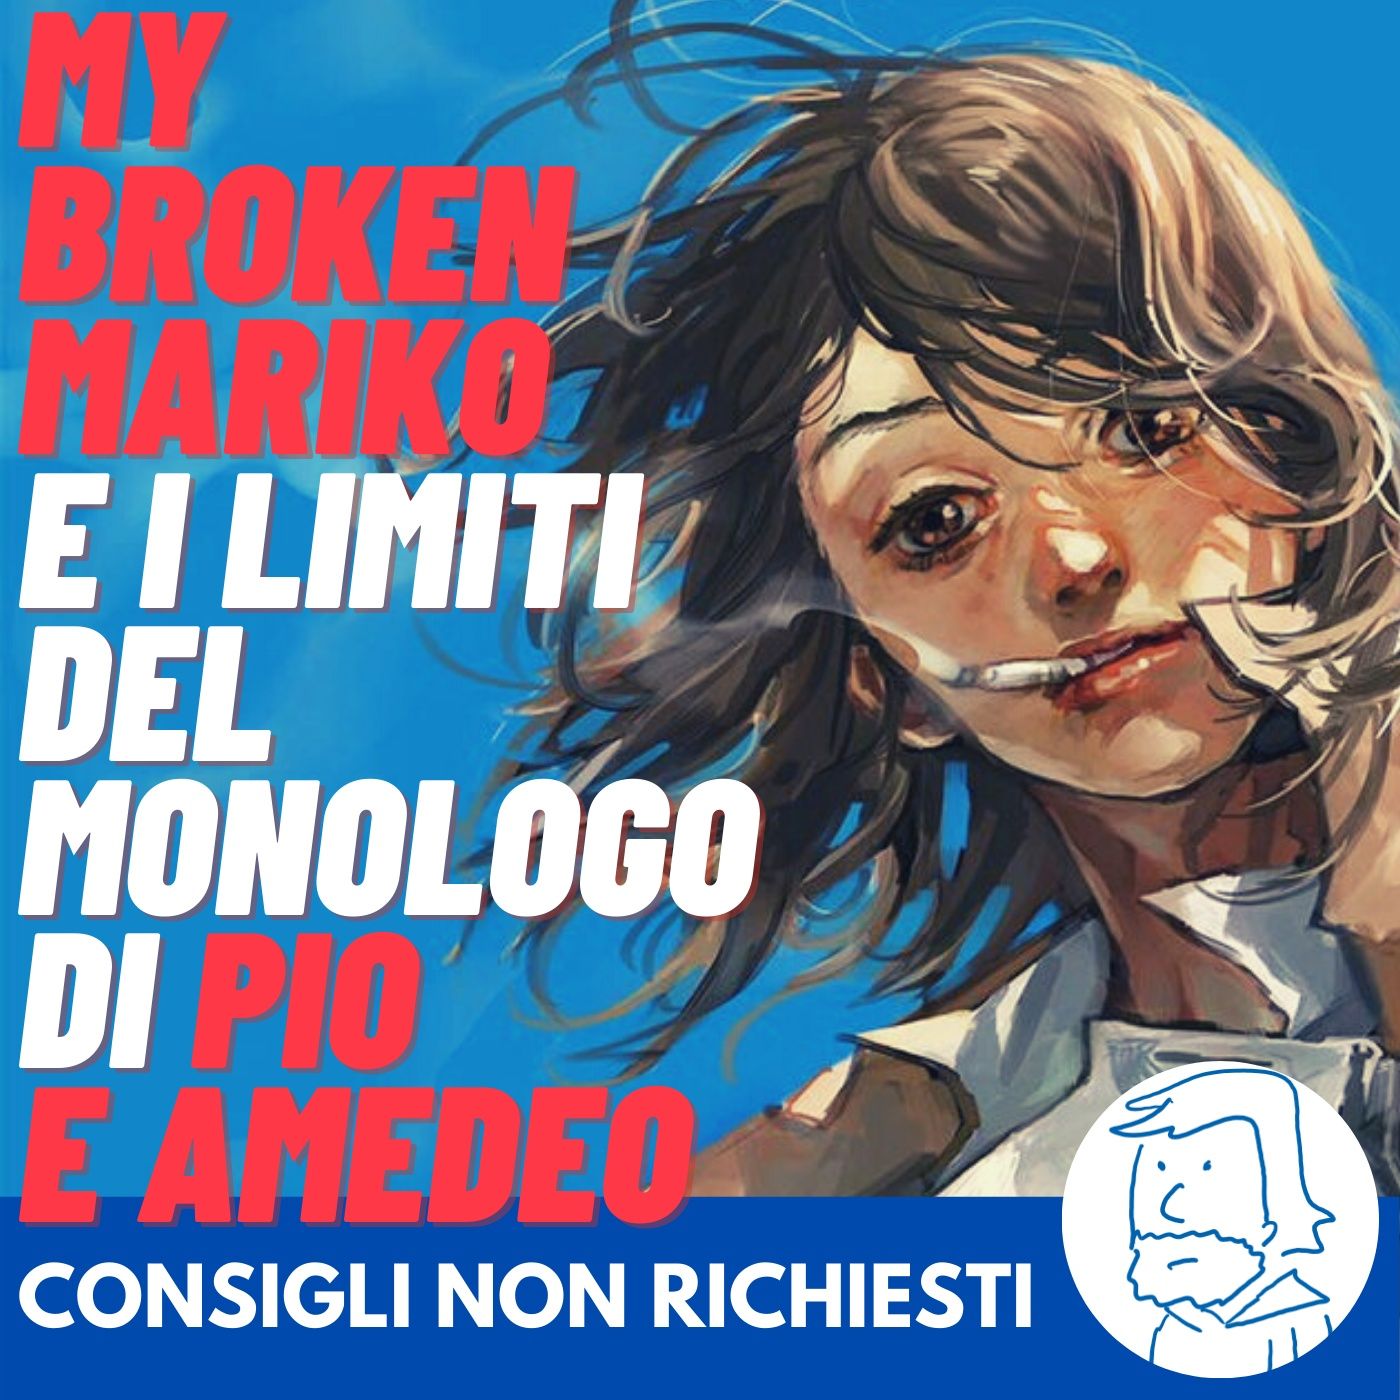 "My Broken Mariko" evidenzia i veri problemi del monologo di Pio e Amedeo